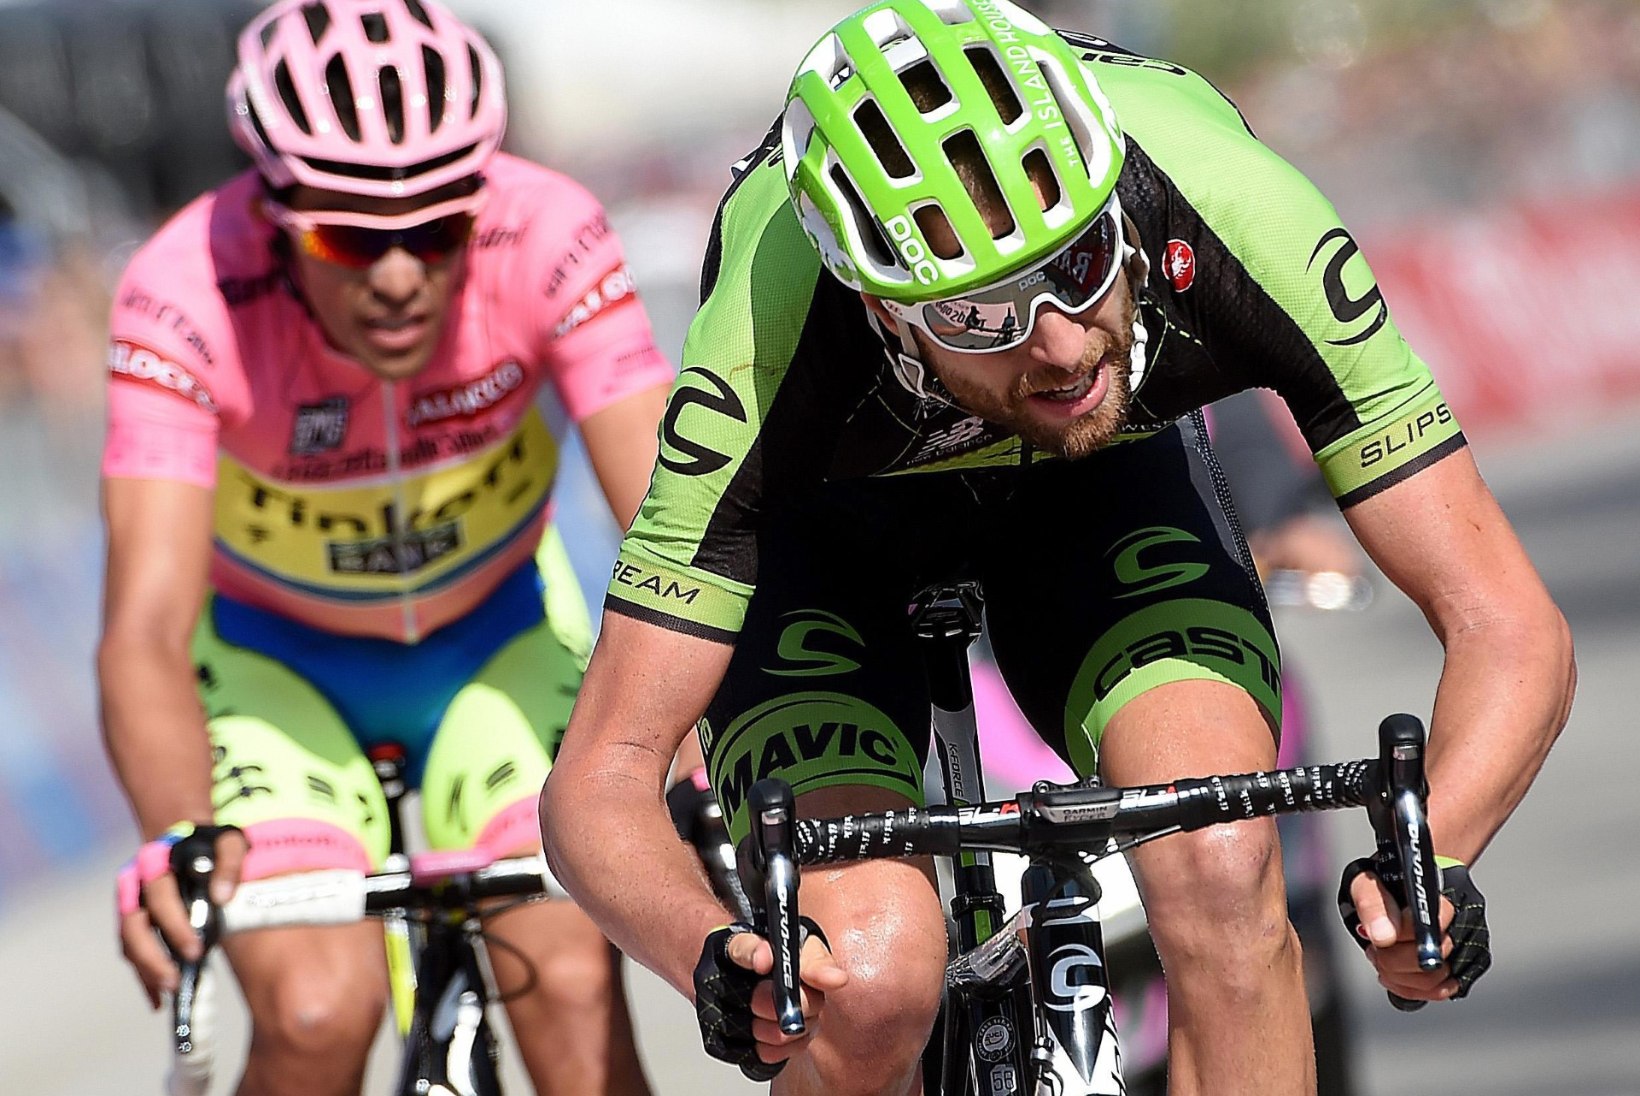 Giro liidri Contadori ja etapi võitnud Gilberti rattad läksid mootorikontrolli